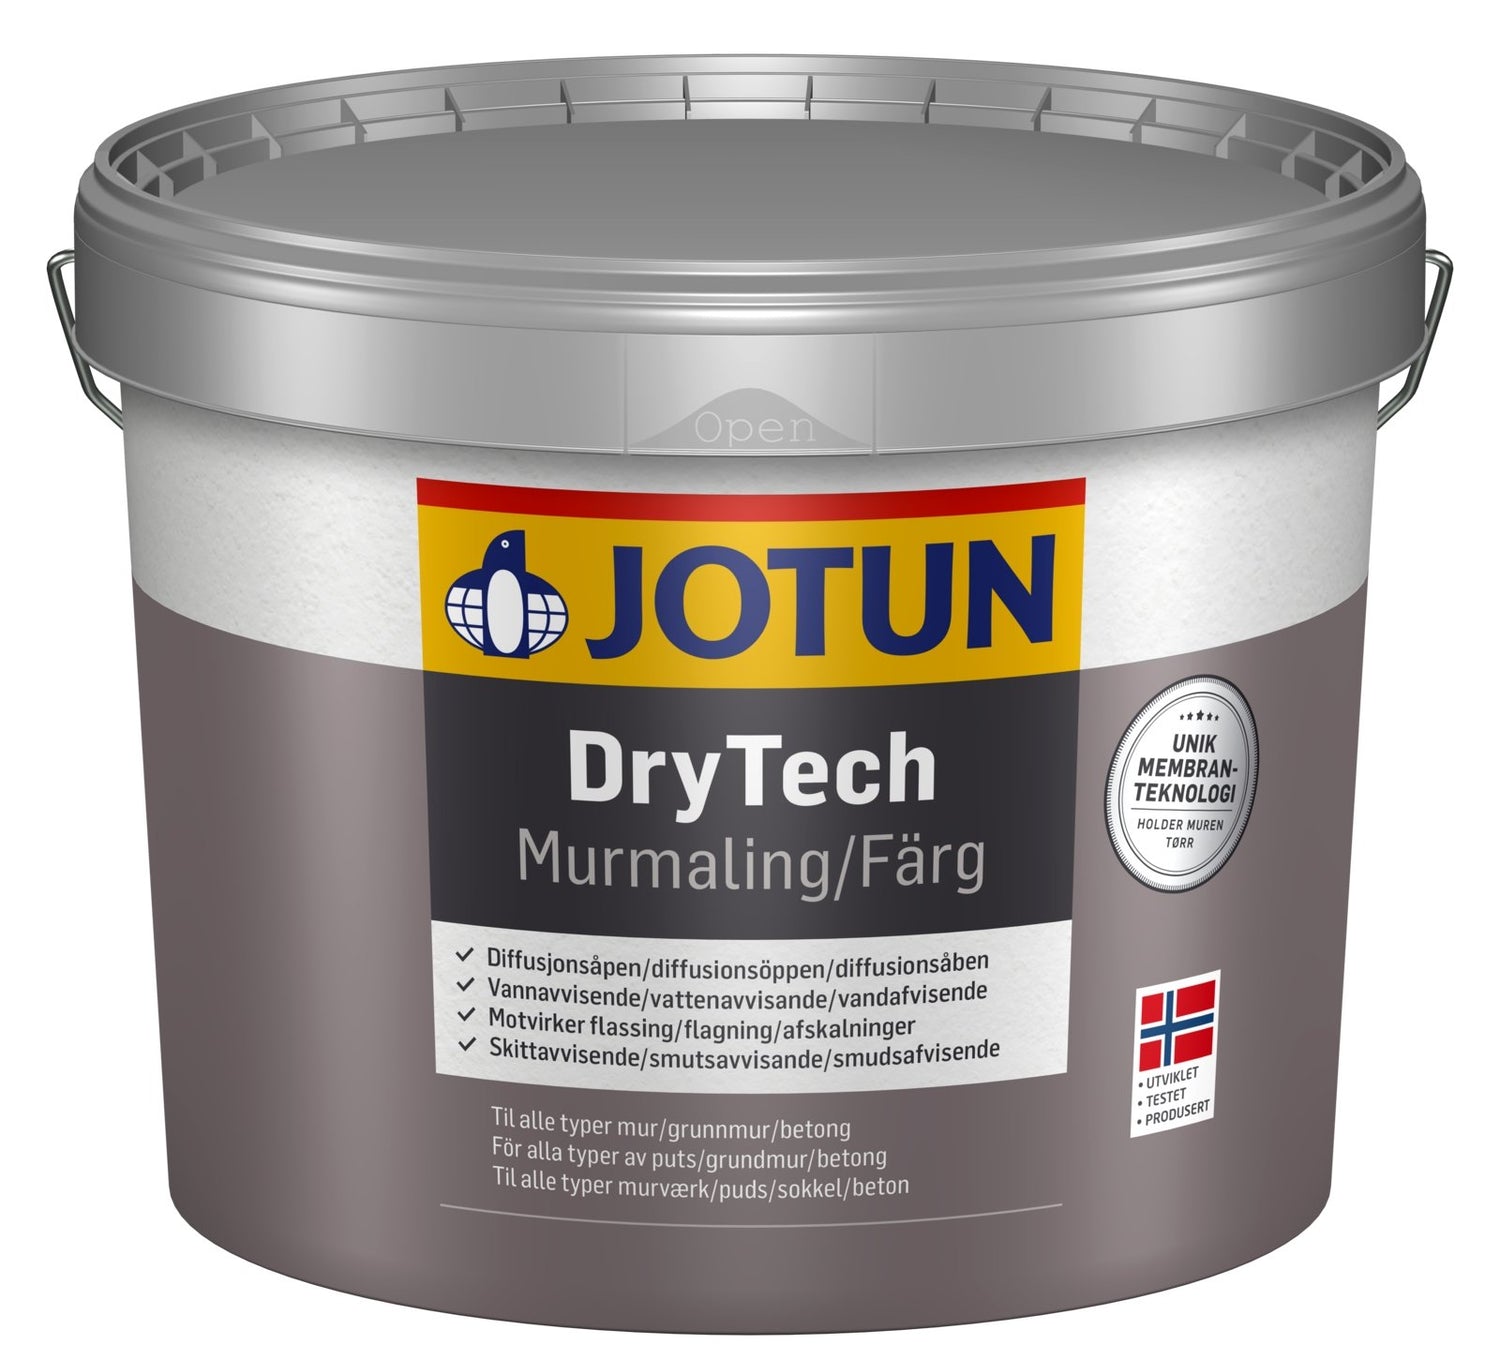 Jotun DryTech Murmaling - Malprivat.dk